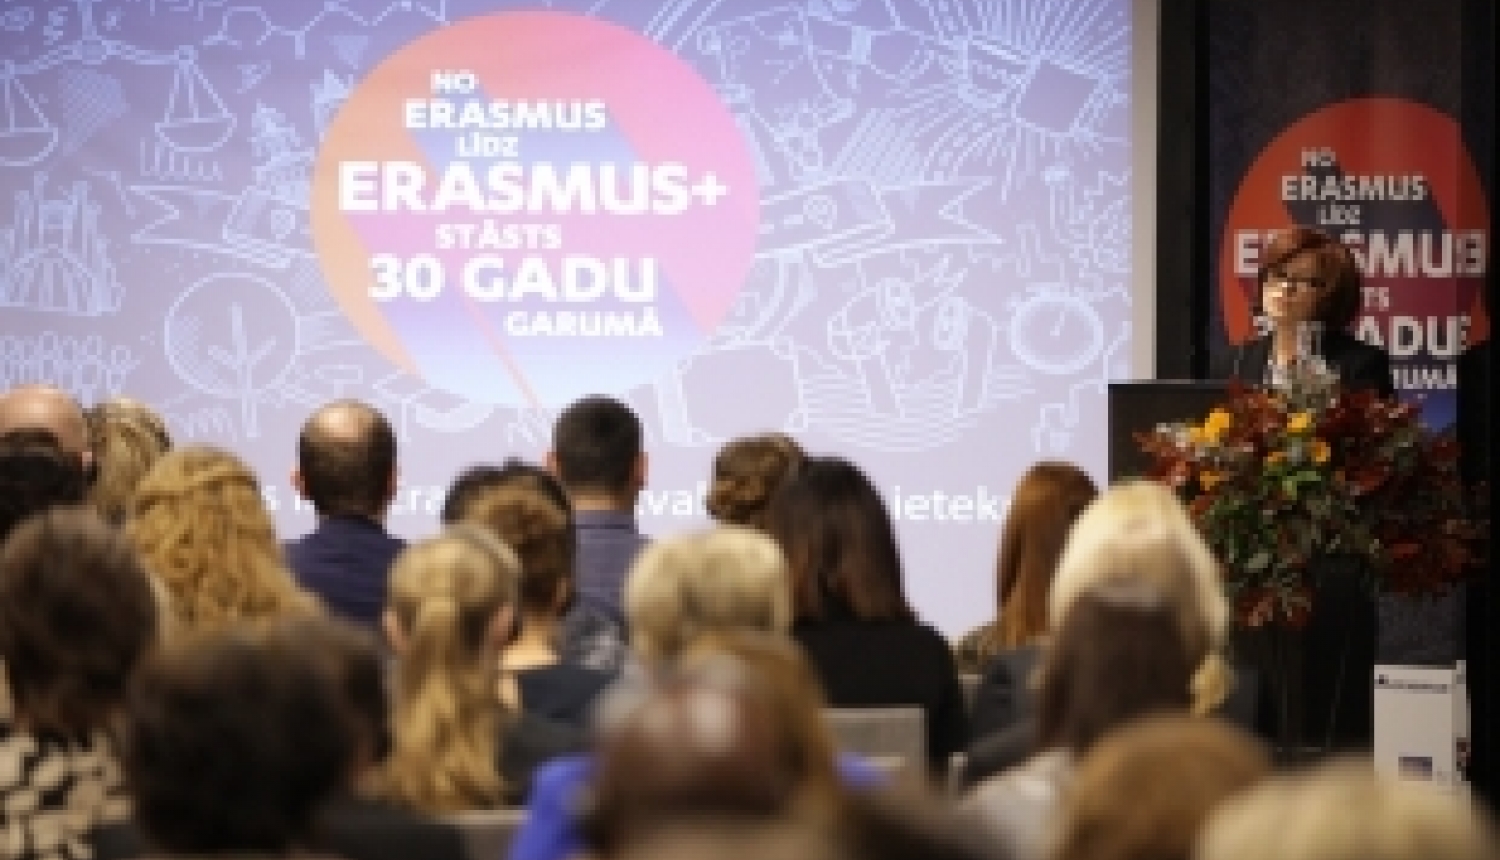 Diskutē par Erasmus+ programmas ietekmi augstākās izglītības sektorā